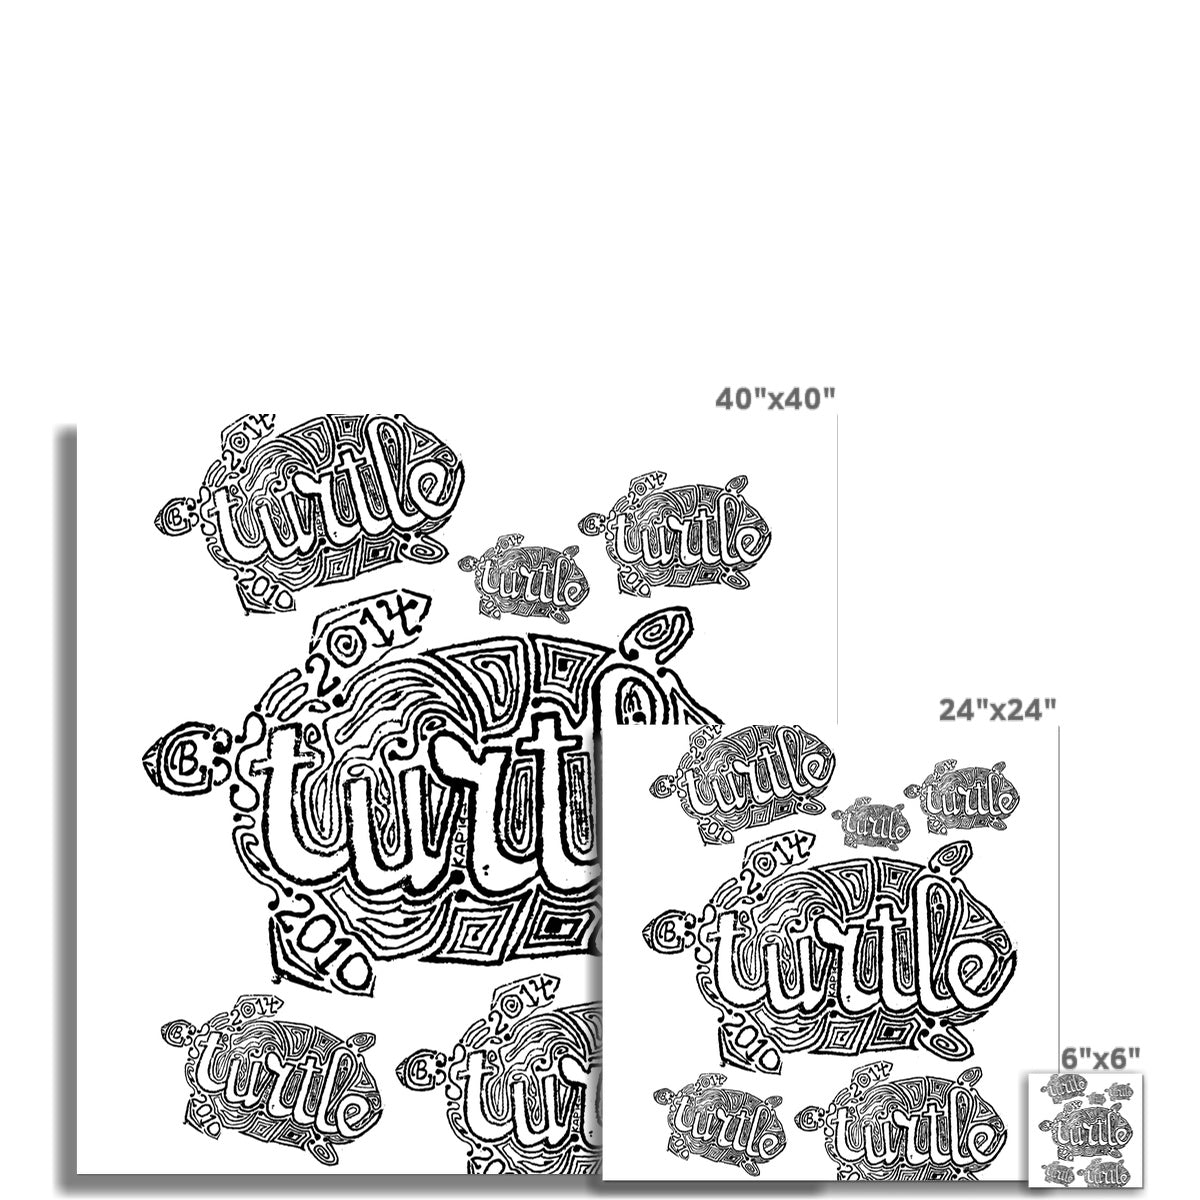 AQUA HMP2 - 12 - Schildkröte - Gerollte Leinwand